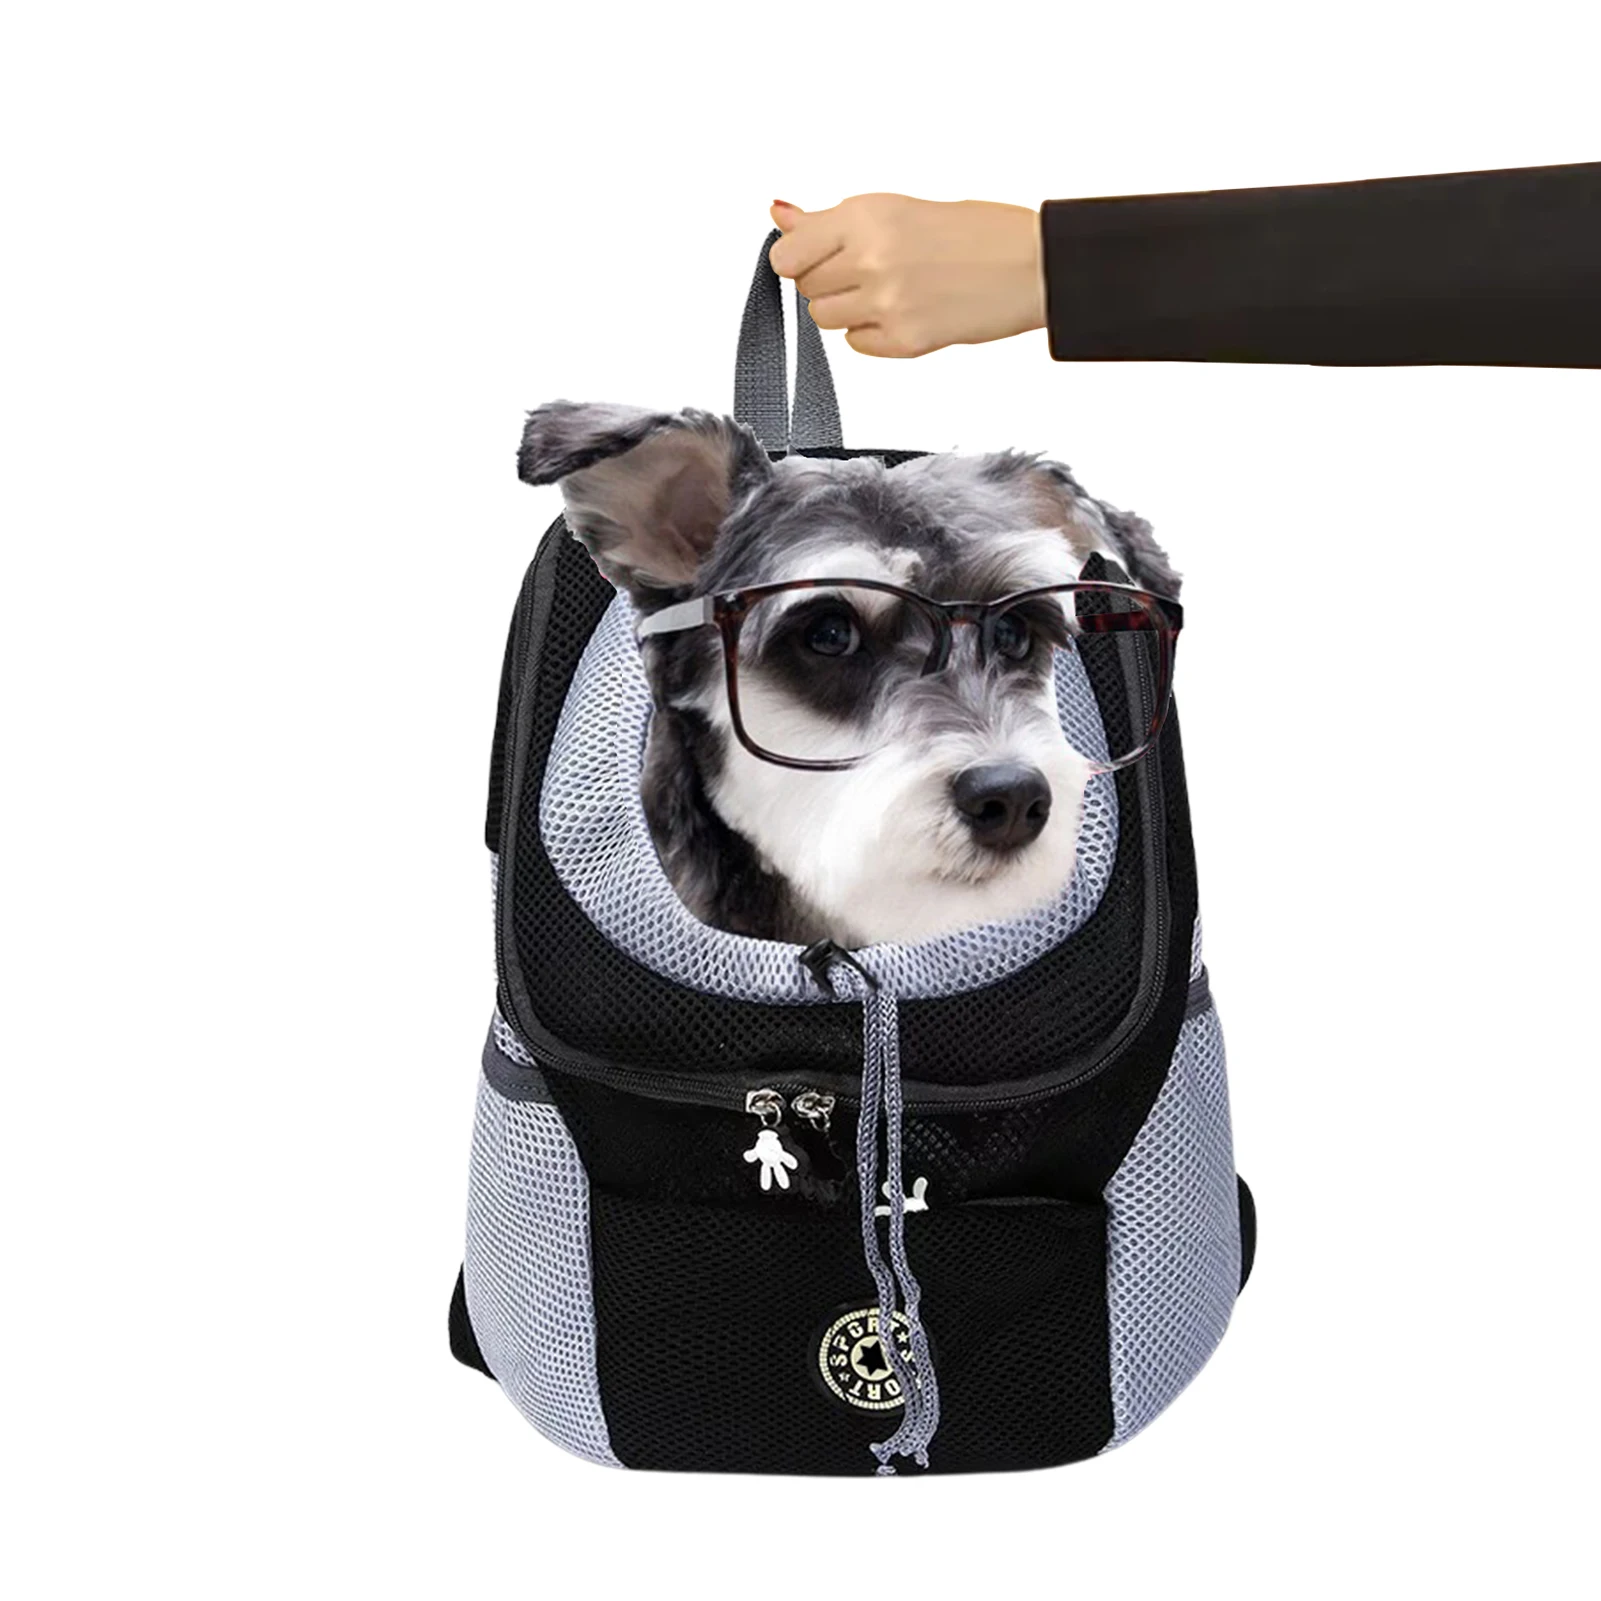 

Воздухопроницаемый удобный рюкзак-переноска для домашних животных, дорожная сумка на плечо для кошек и собак с мягкой дышащей сеткой сбоку ...